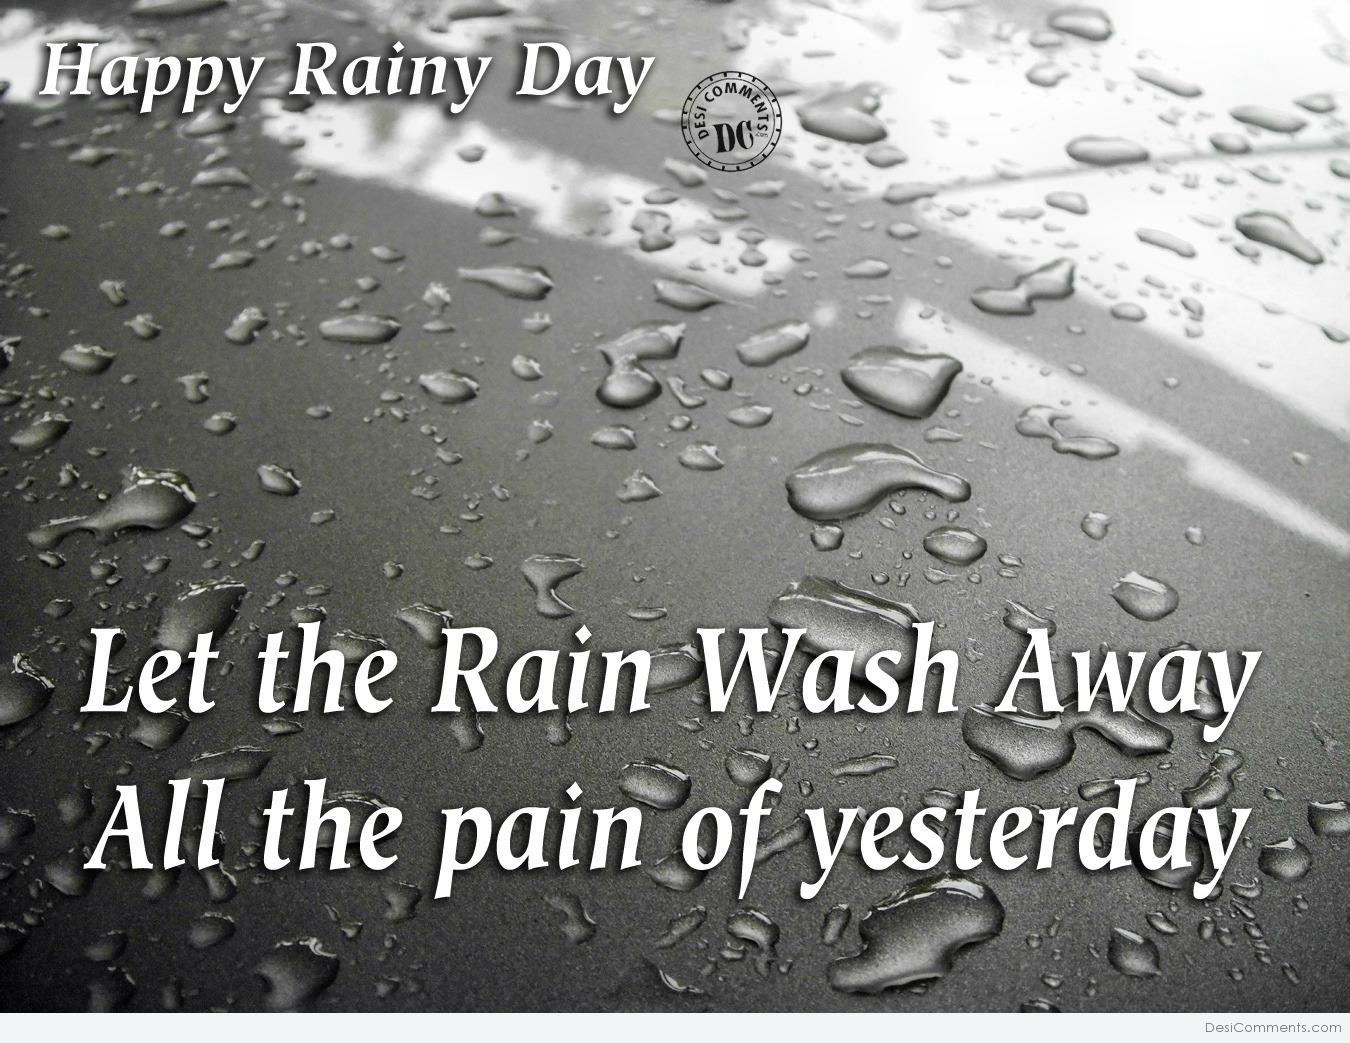 Rainy Day Quote Image 2